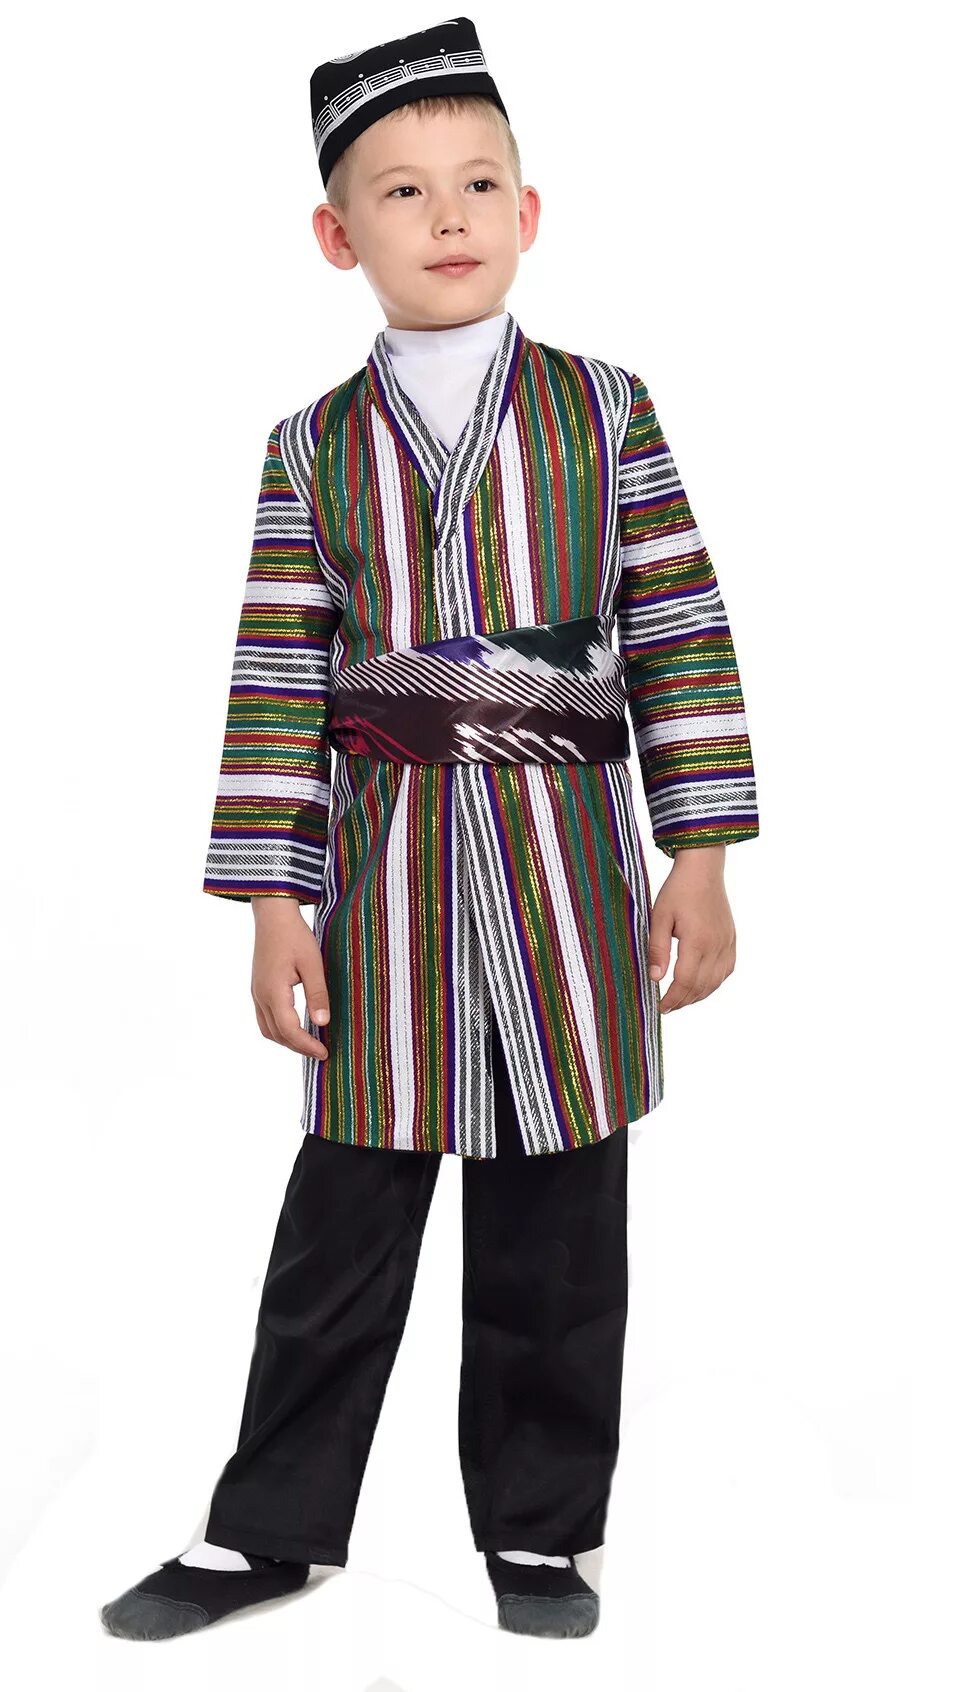 Детская национальная одежда. Узбедскийкостюм для мальчика. Узбекский национальный костюм для мальчика. Таджикский национальный костюм для мальчика. Мальчик в национальном костюме.